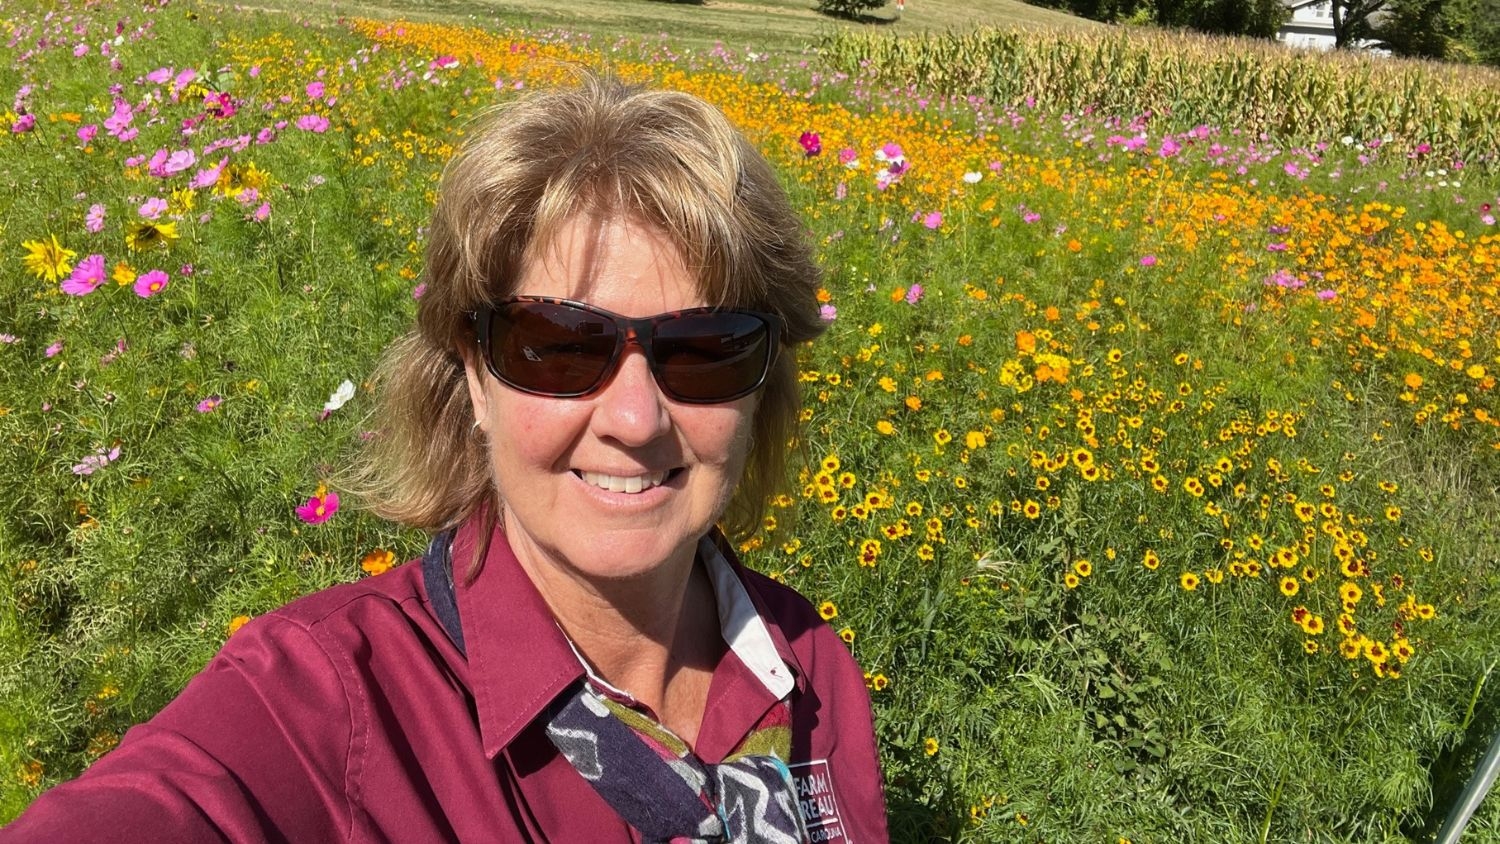 Debbie Hamrick taking a selfie in a field of flowers